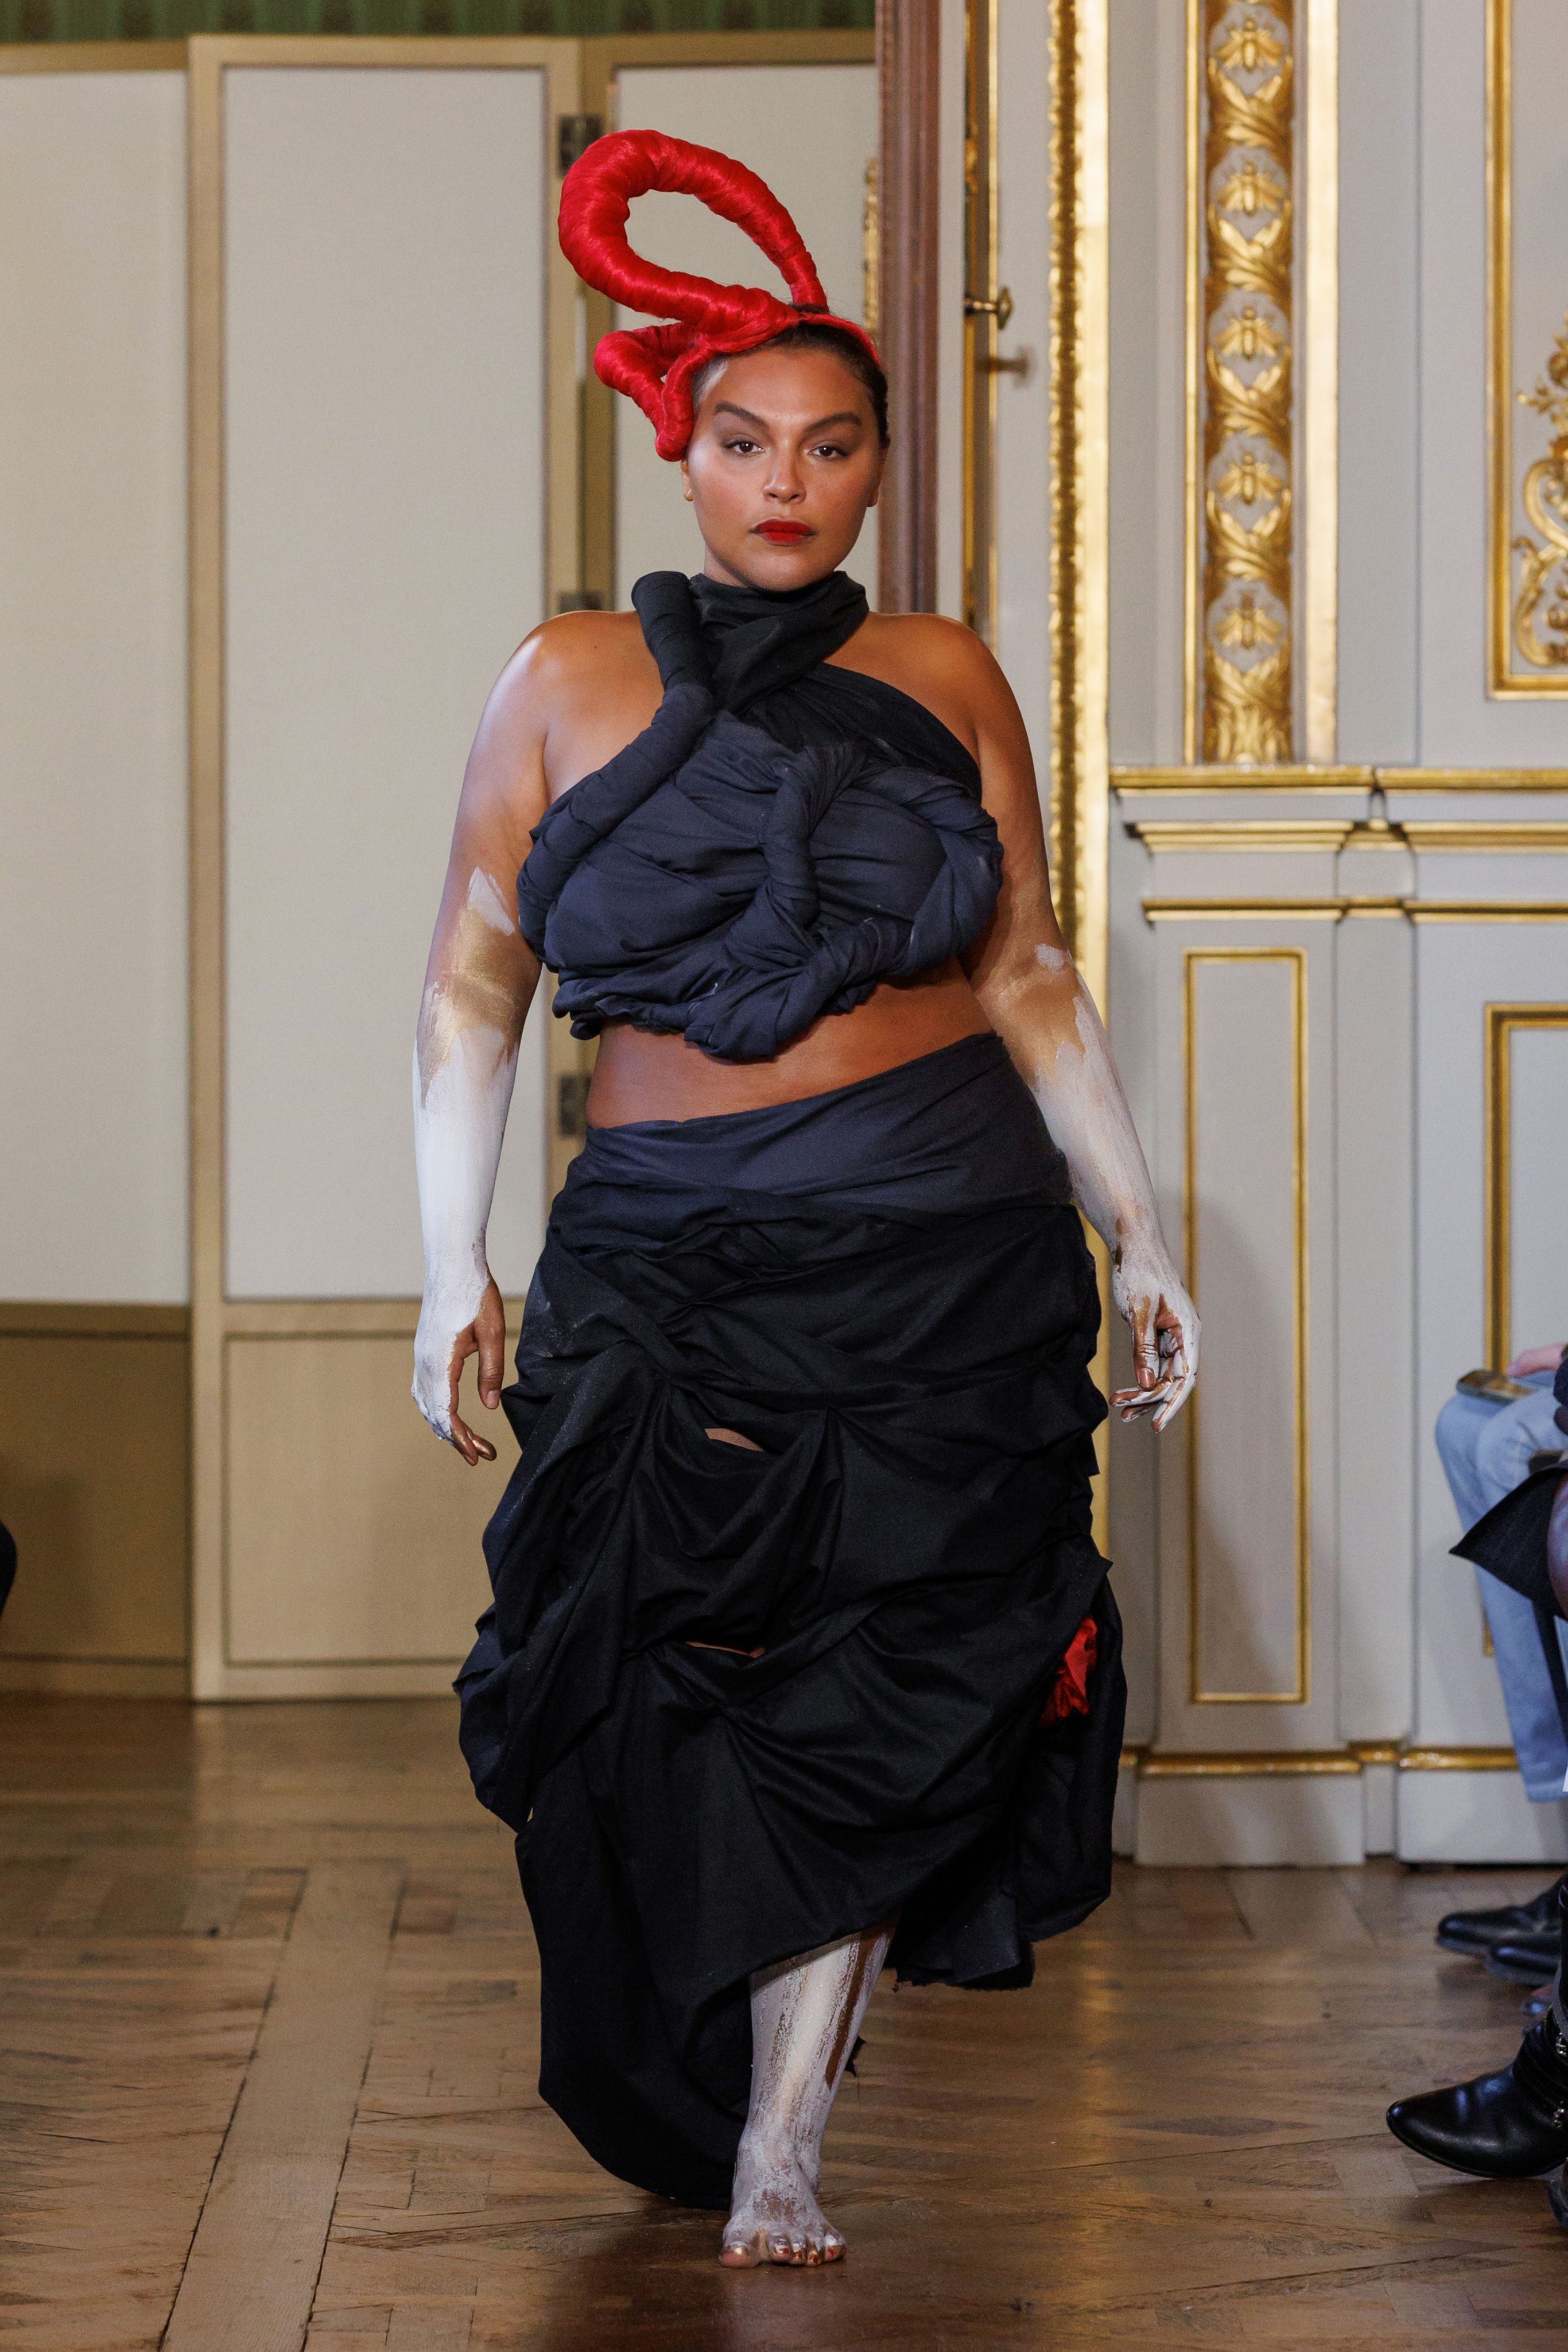 Jennifer Lopez Lingerie: Luxe Designs & Quality Fabrics